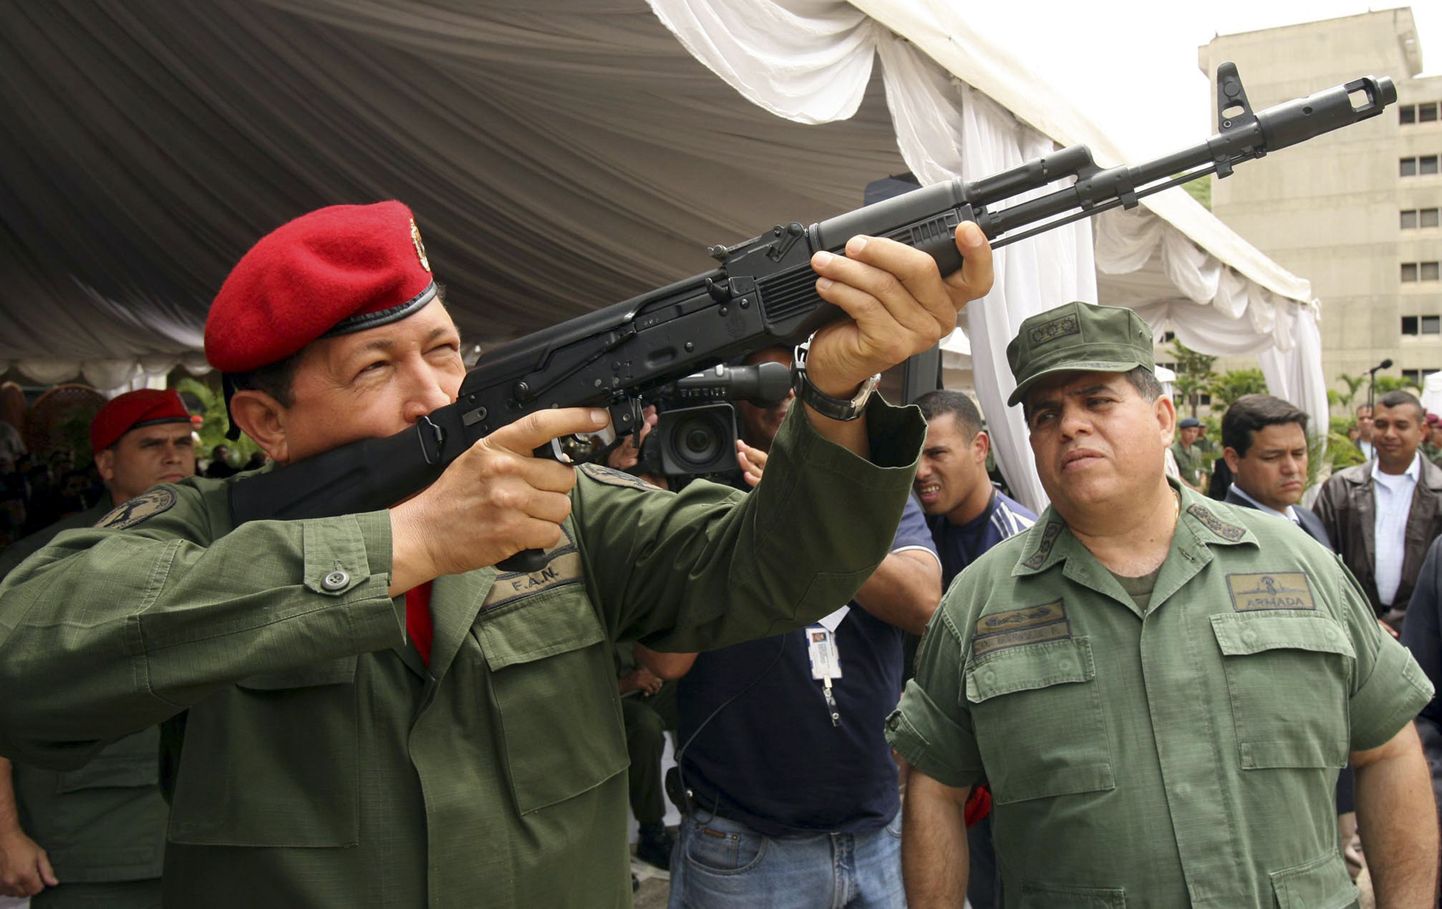 Venezuela president Hugo Chavez koos uue AK-103 Kalašnikovi automaadiga relvanäitusel 2006. aastal.